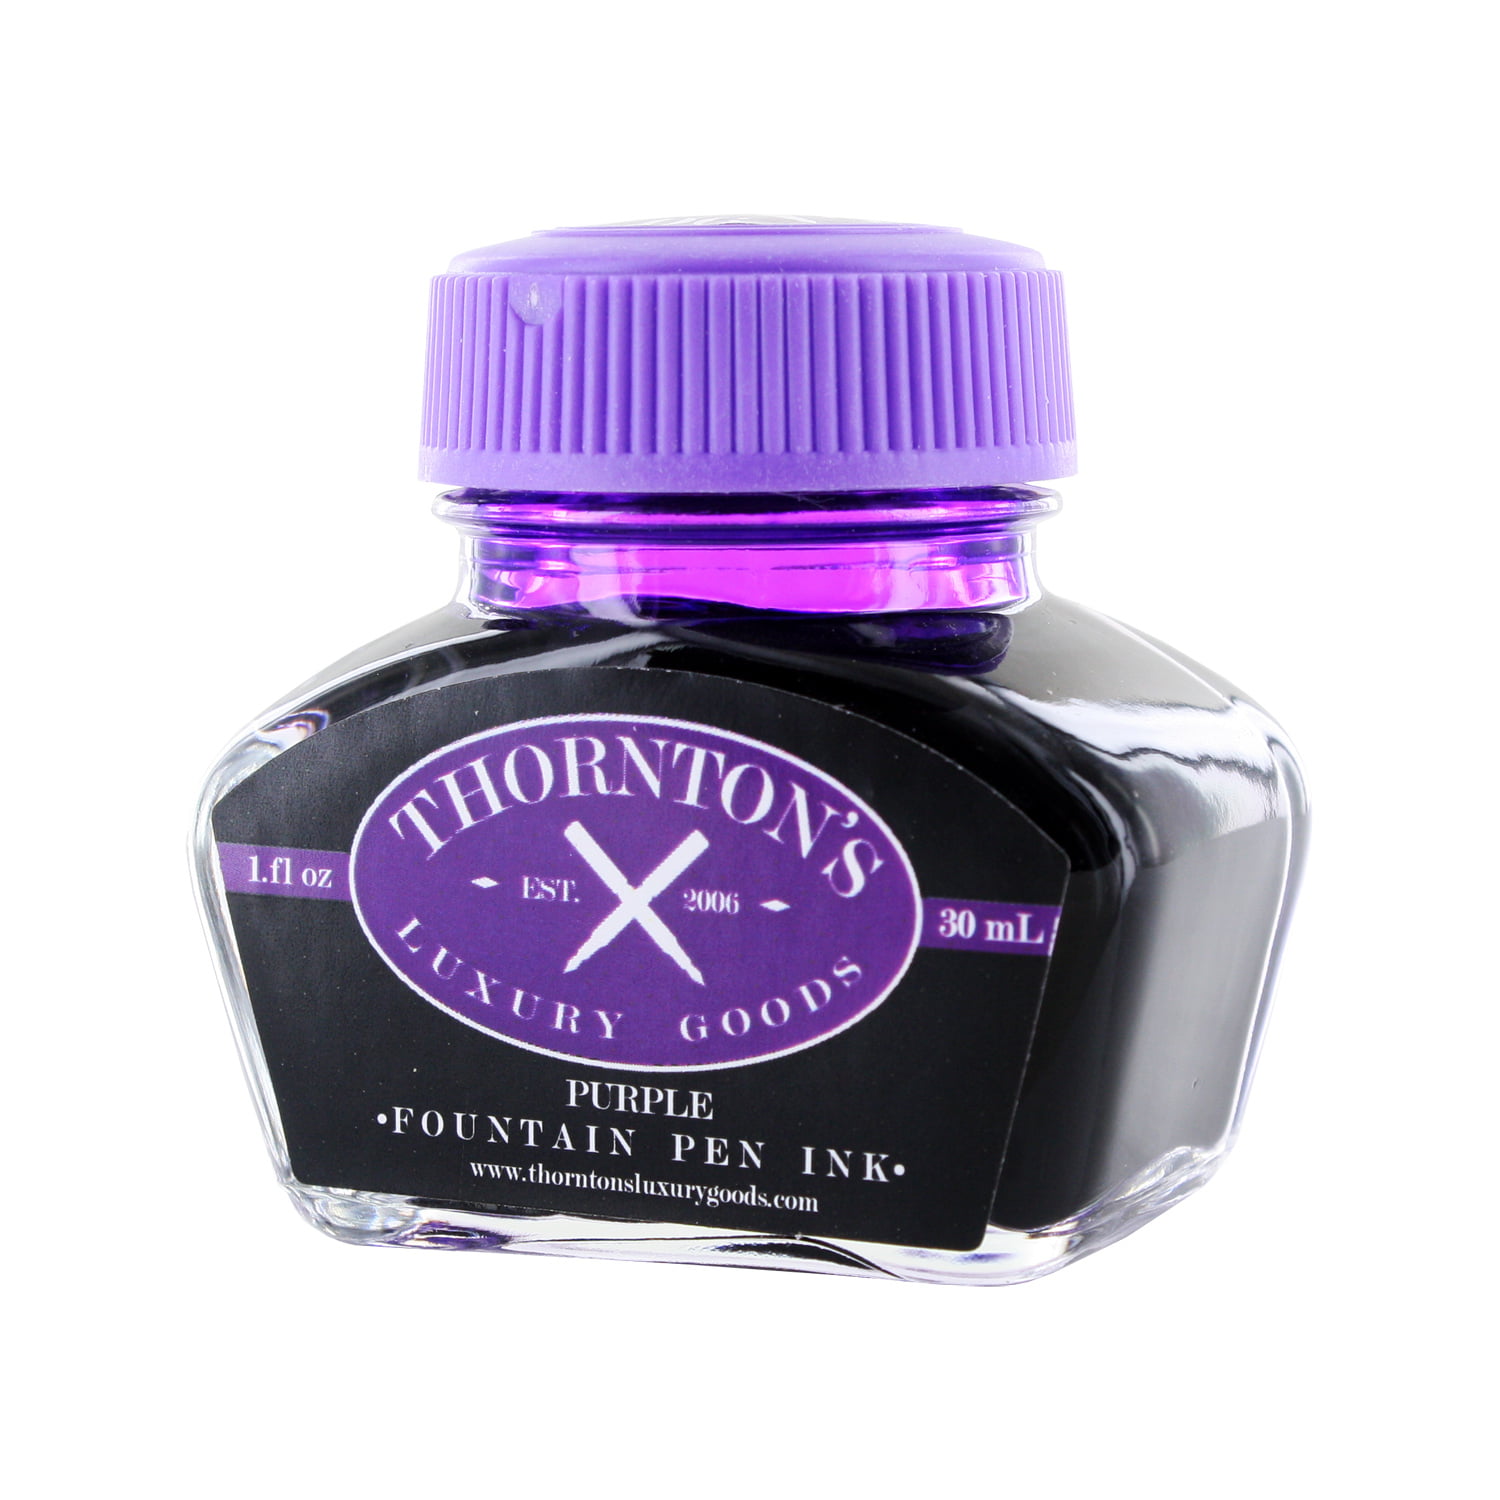 Thornton's Luxury Goods Fountain Pen Ink 30ml Bottle 